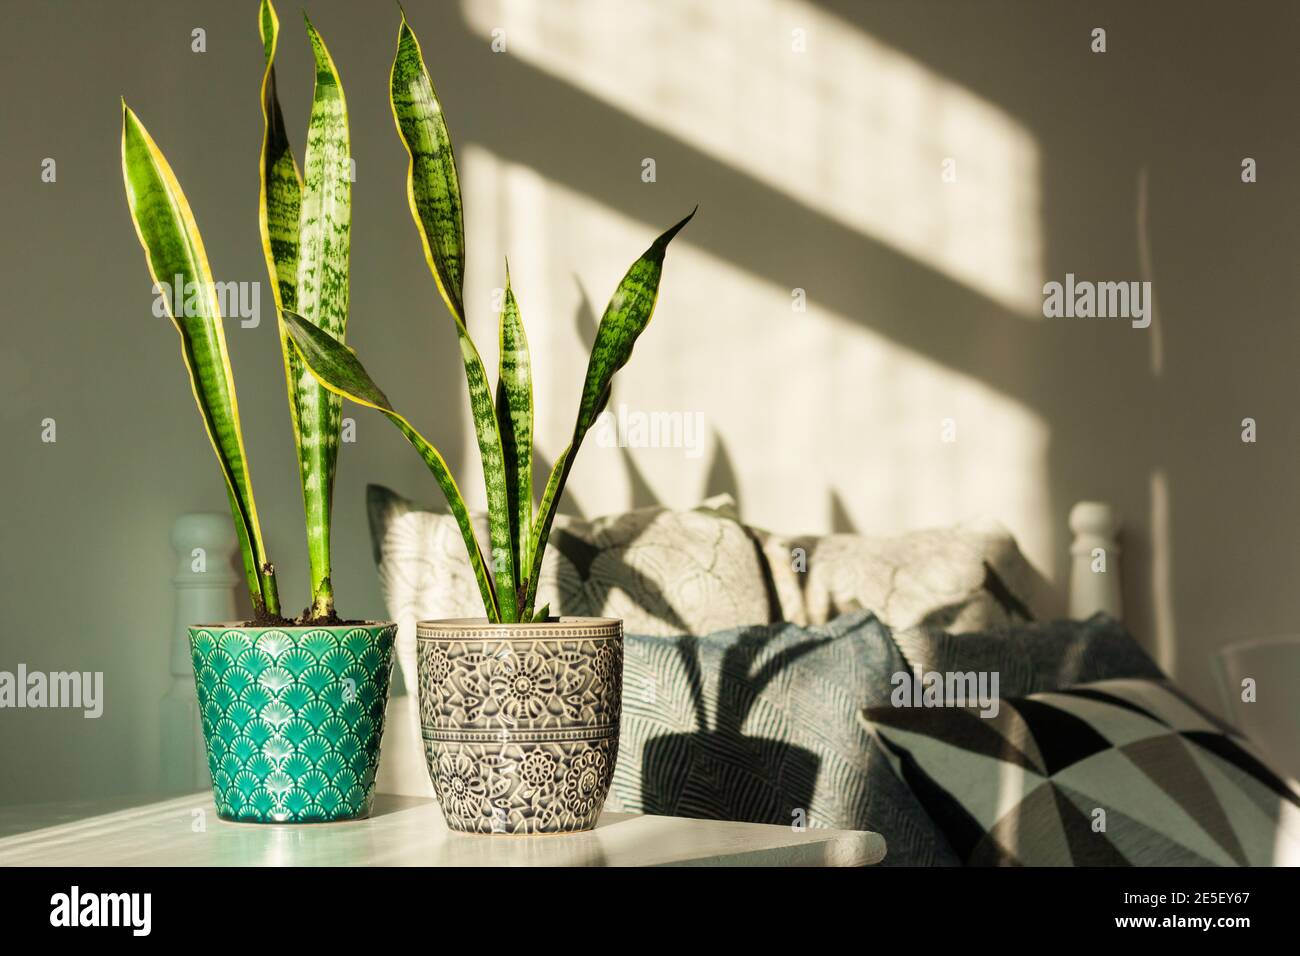 Décoration intérieure chaleureuse, Sansevieria (plante de serpent) en pots de céramique sur une table blanche sur le fond d'un lit avec oreillers décoratifs, design moderne Banque D'Images